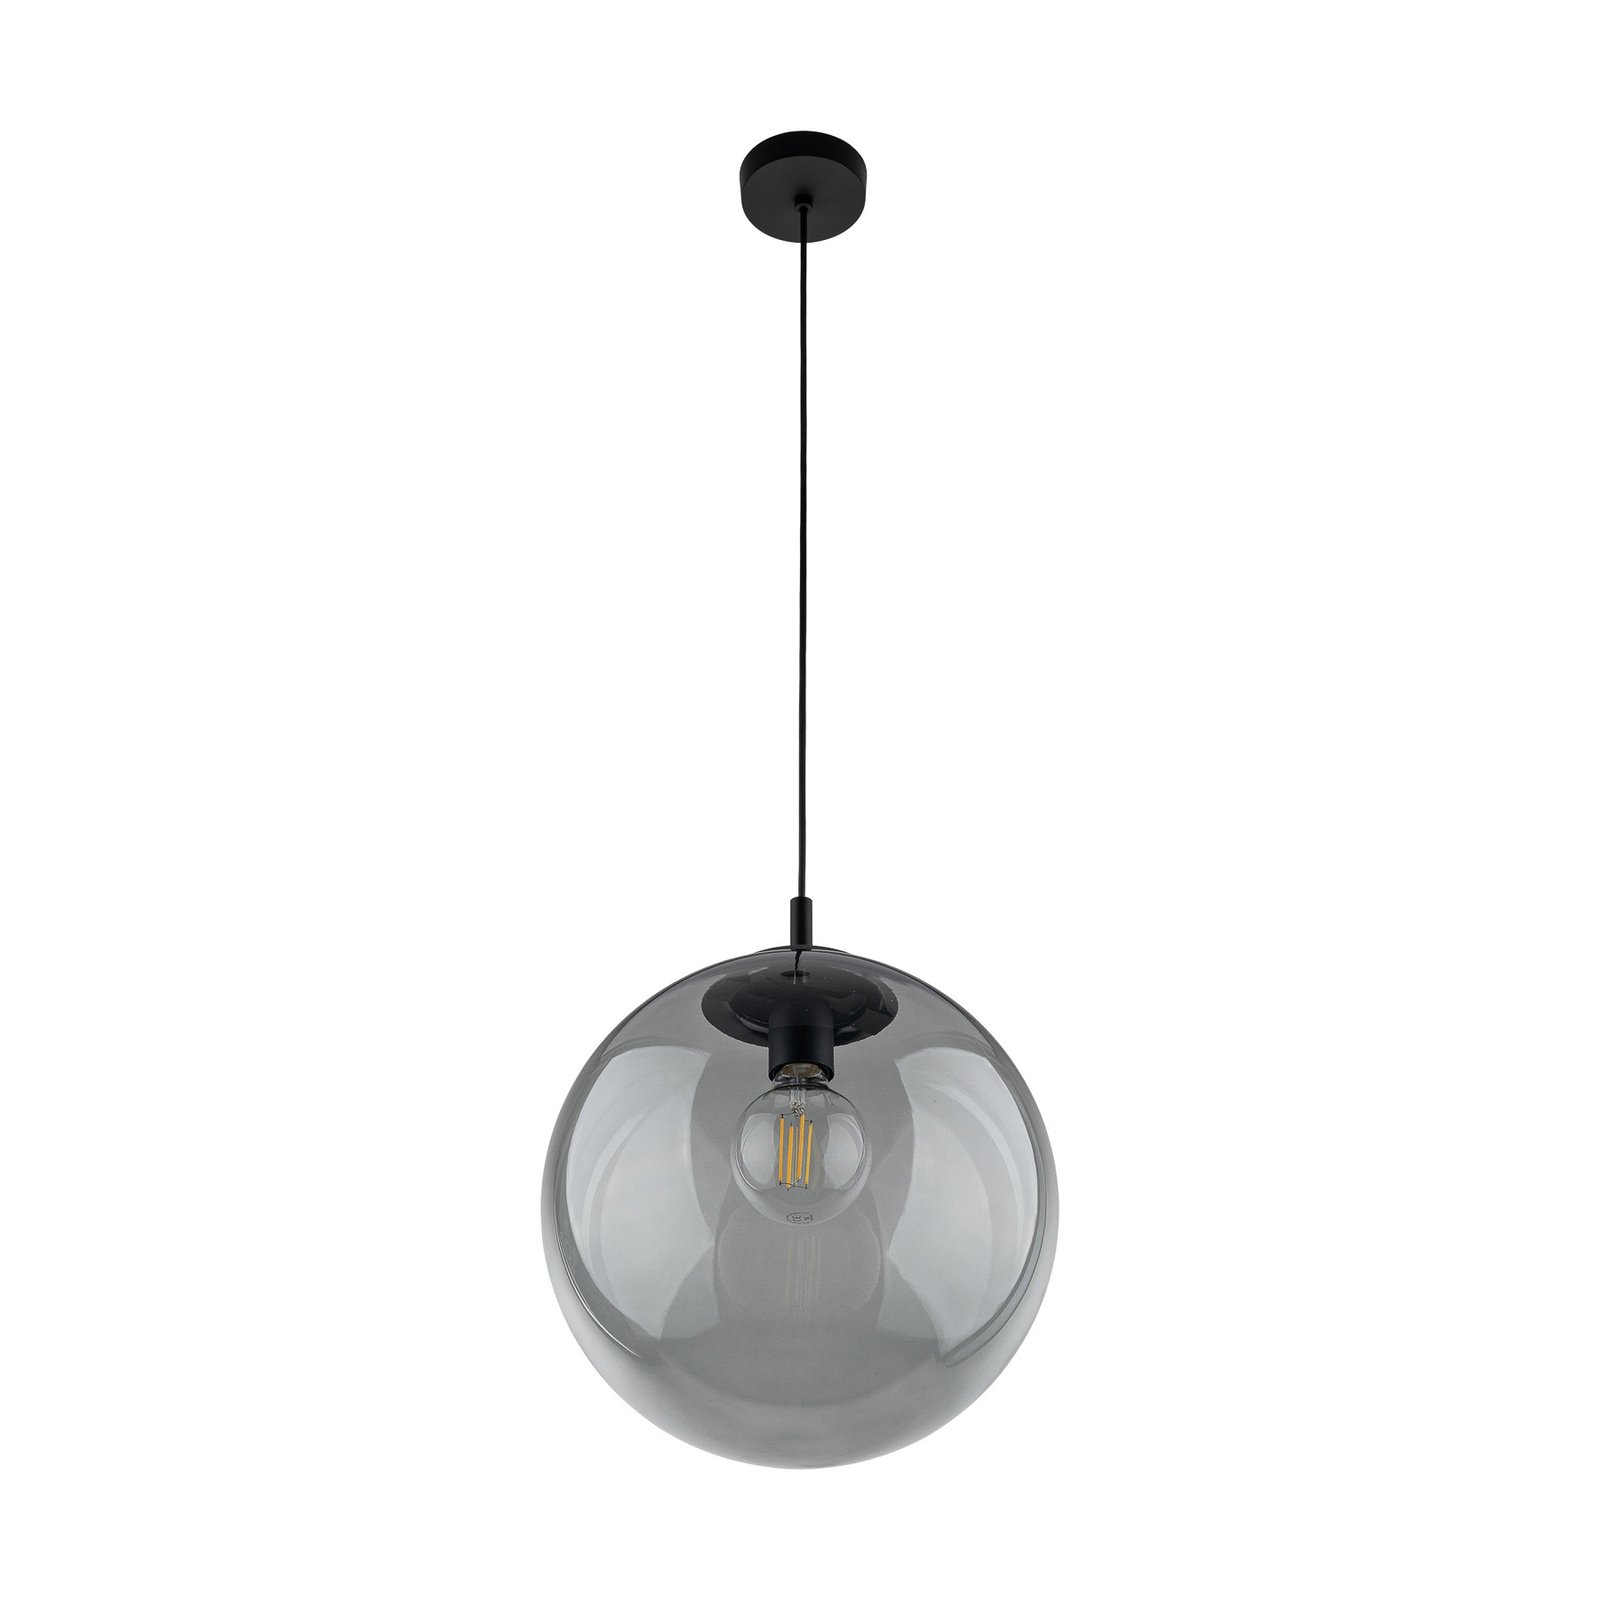 Esme viseća svjetiljka, staklo, grafit-prozirno, 1 žarulja, Ø 35 cm